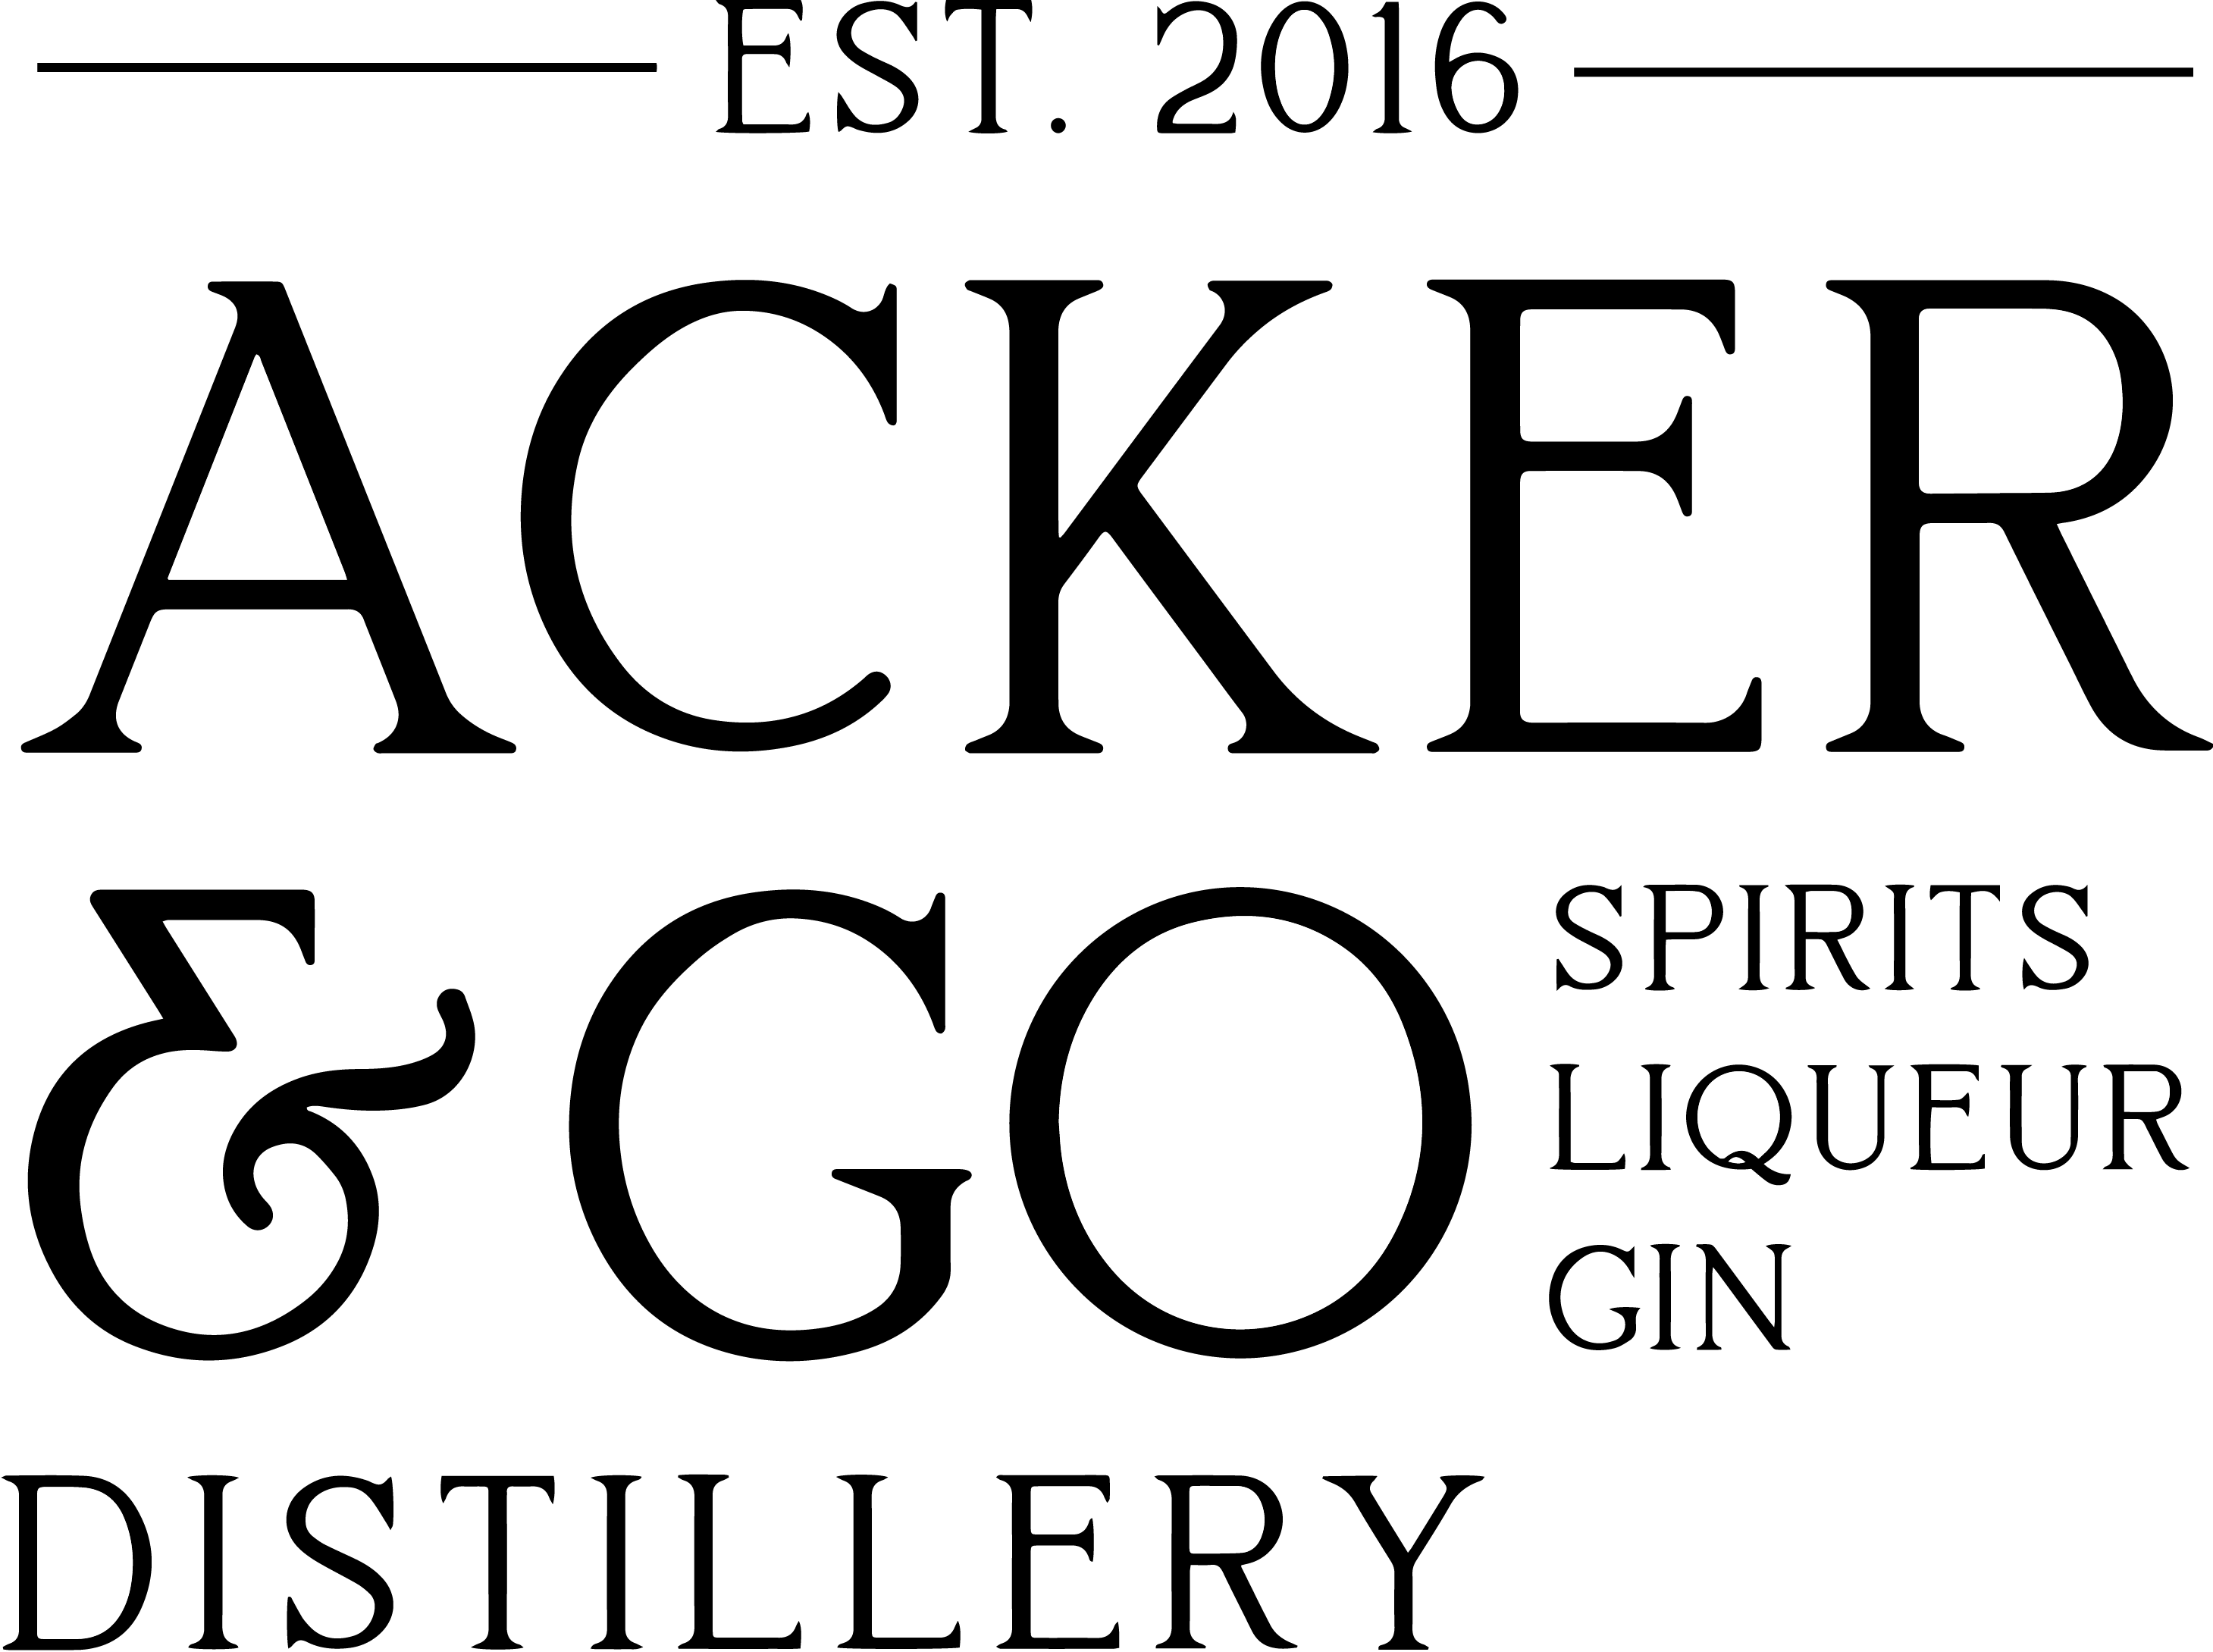 Acker & Go Distillery